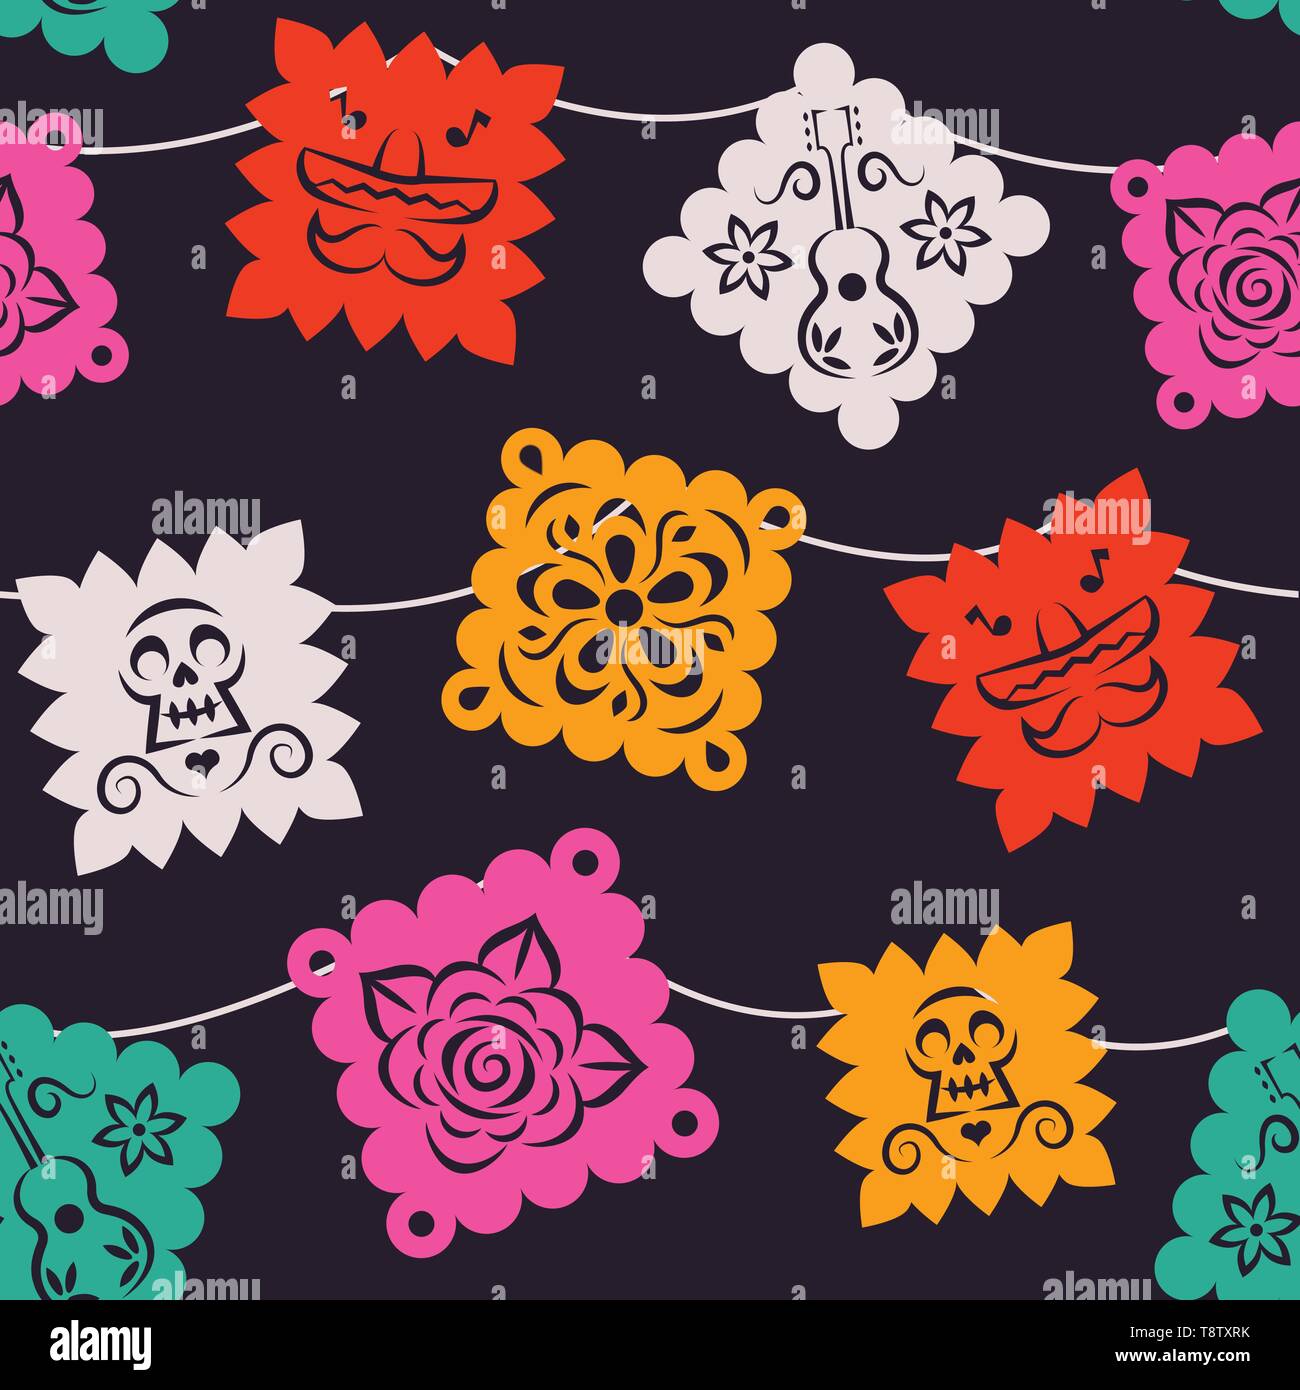 Carta messicano bandiera seamless pattern. Tradizionale papel picado sfondo con mariachi hat, cranio e flower art per il Messico vacanza o evento della coltura. Illustrazione Vettoriale